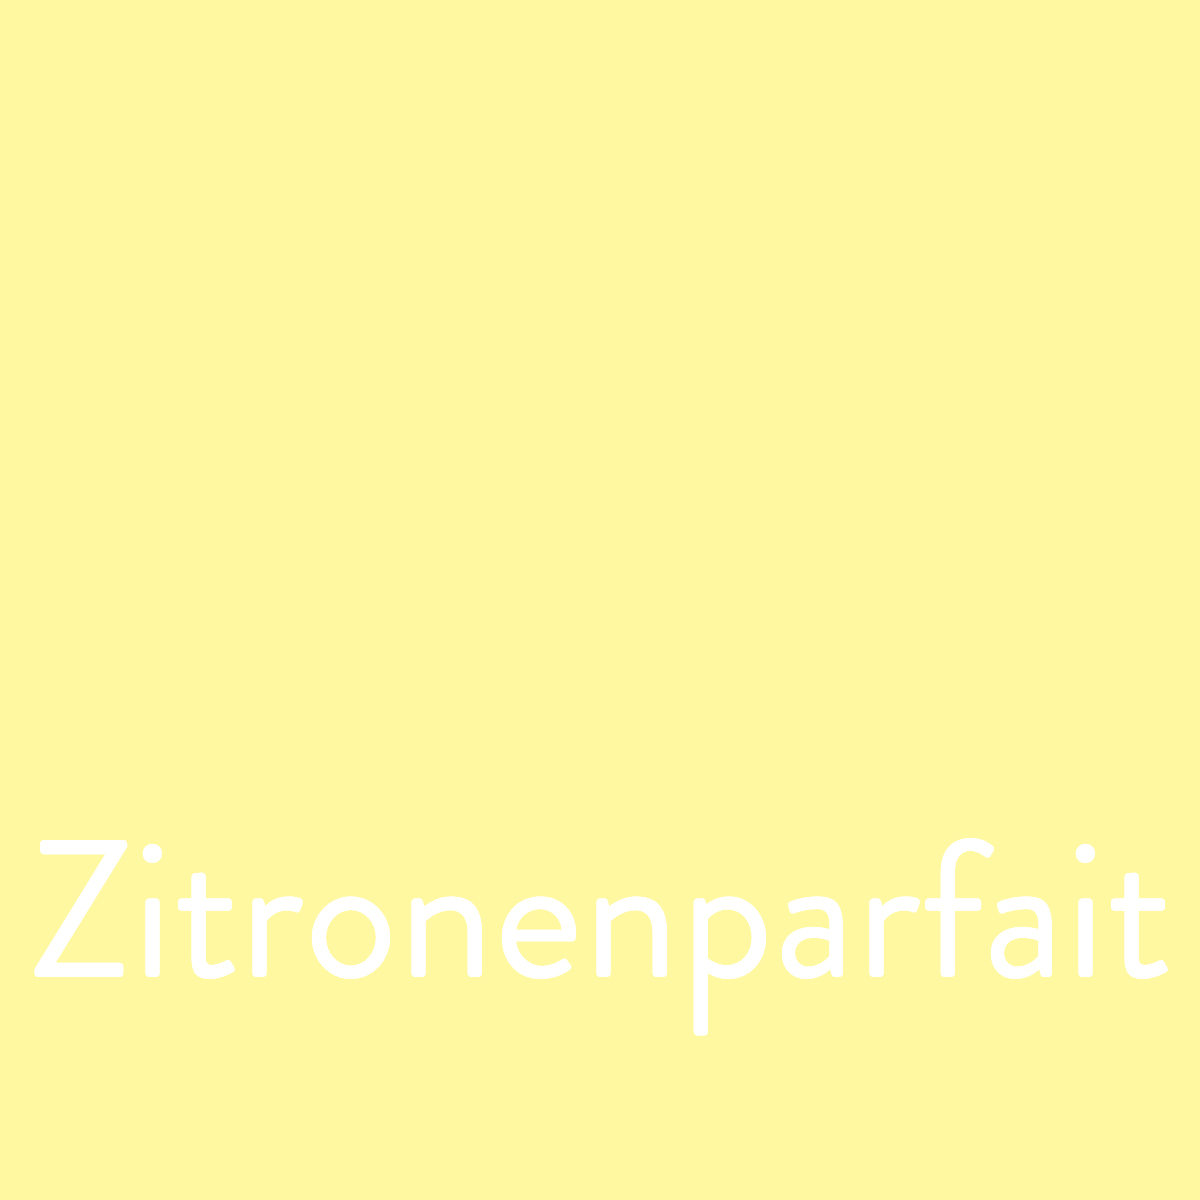 Stampin Up Farberneuerung - Die neuen Farben Stempelmami Zitronenparfait